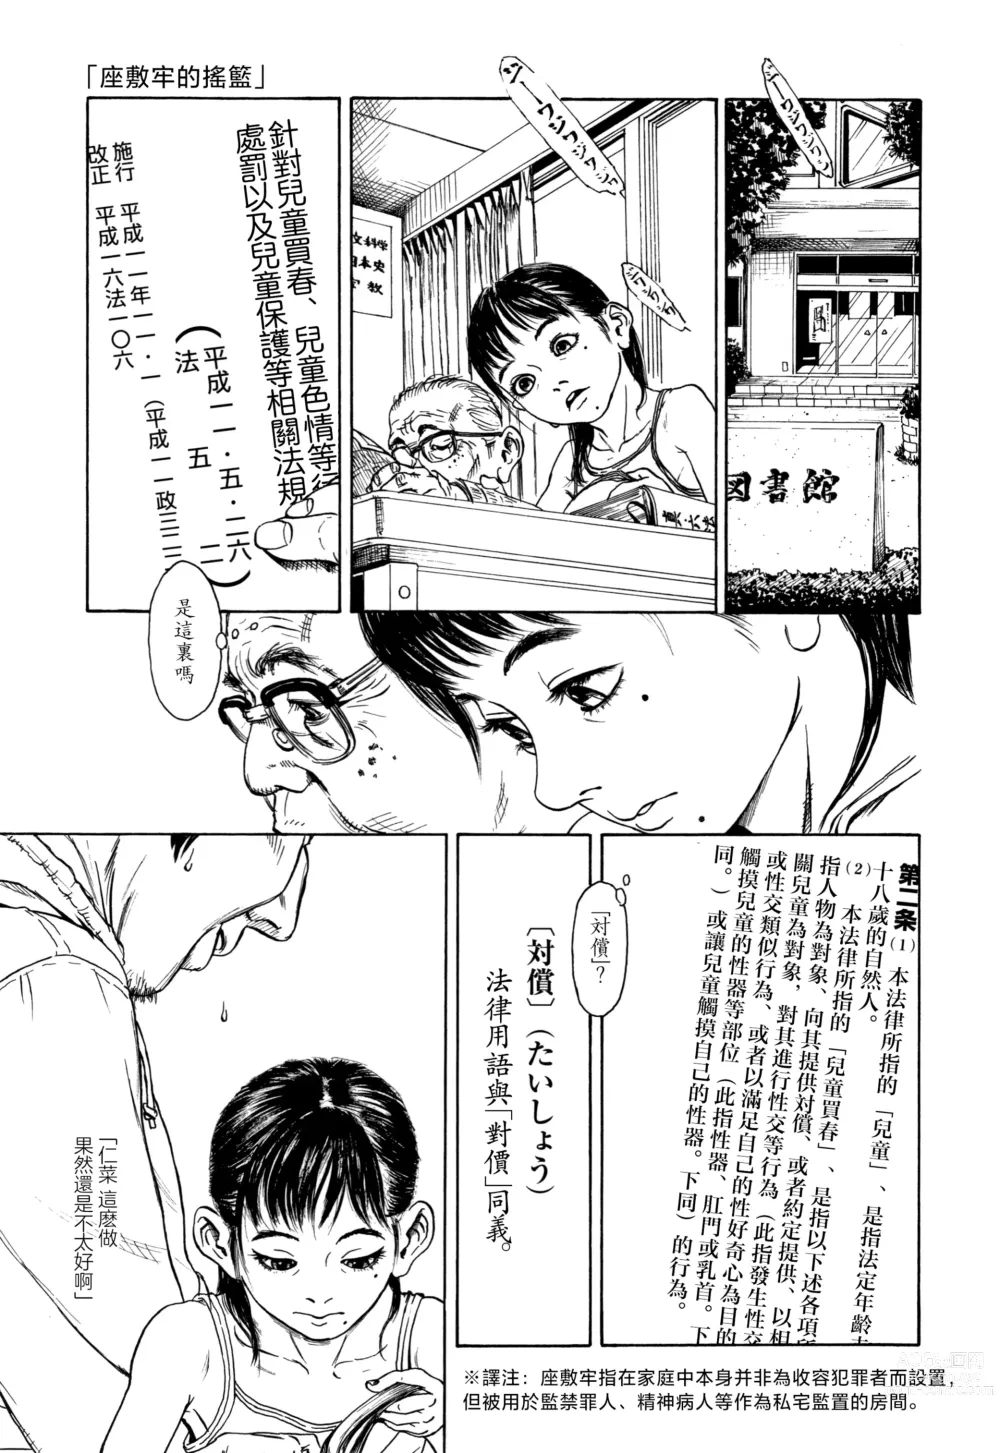 Page 1 of manga Zasikirou no Yurikago